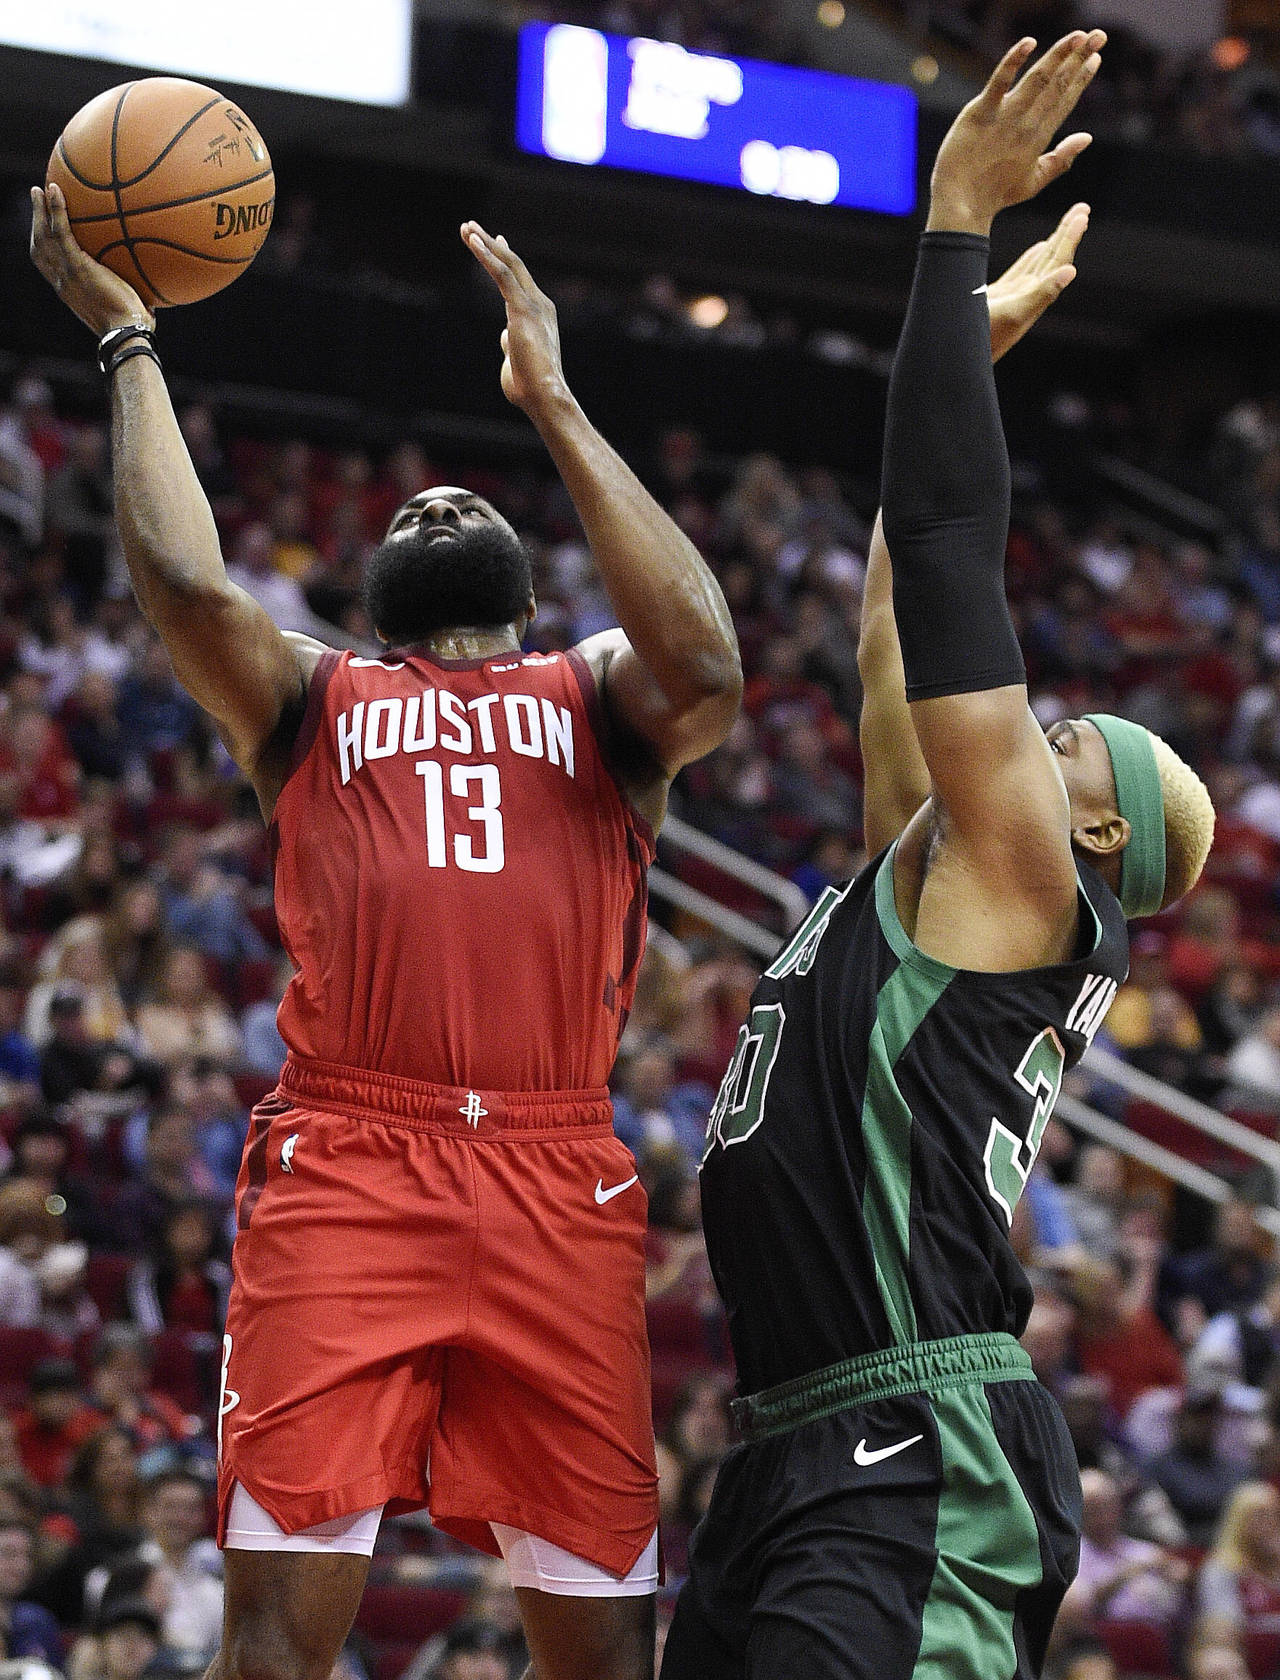 Harden's 45 lead Rockets in 127-113 win over Celtics